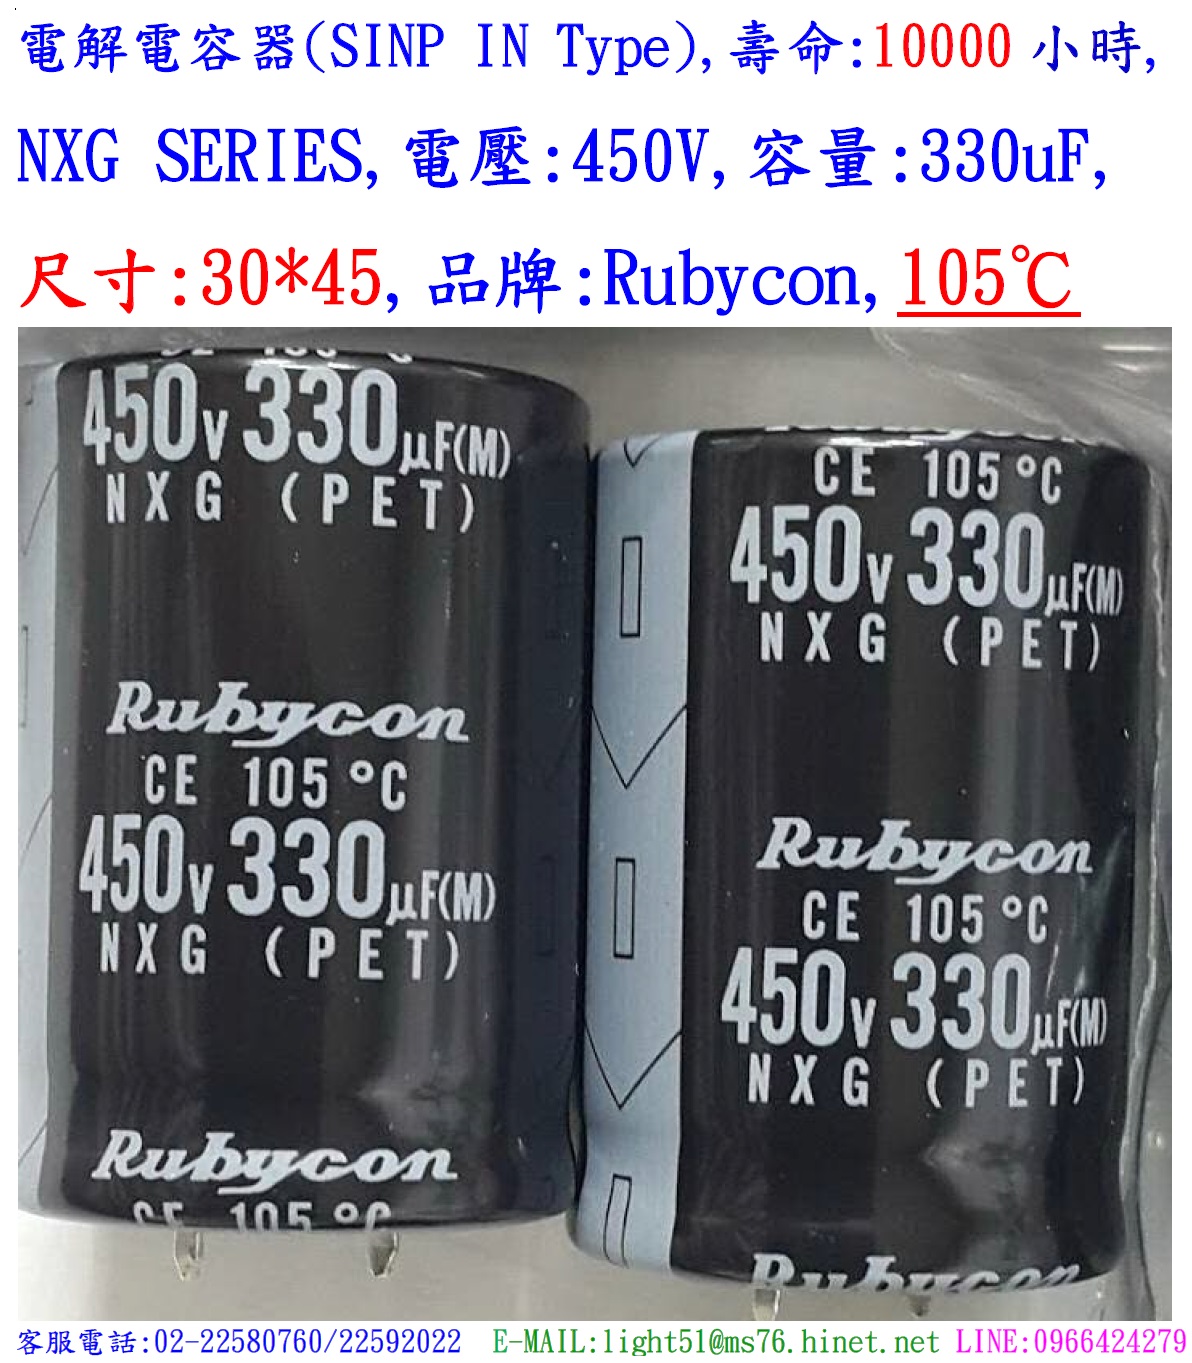 NXG,450V,330uF,尺寸:30*45,電容電容器,壽命:10000小時,Rubycon